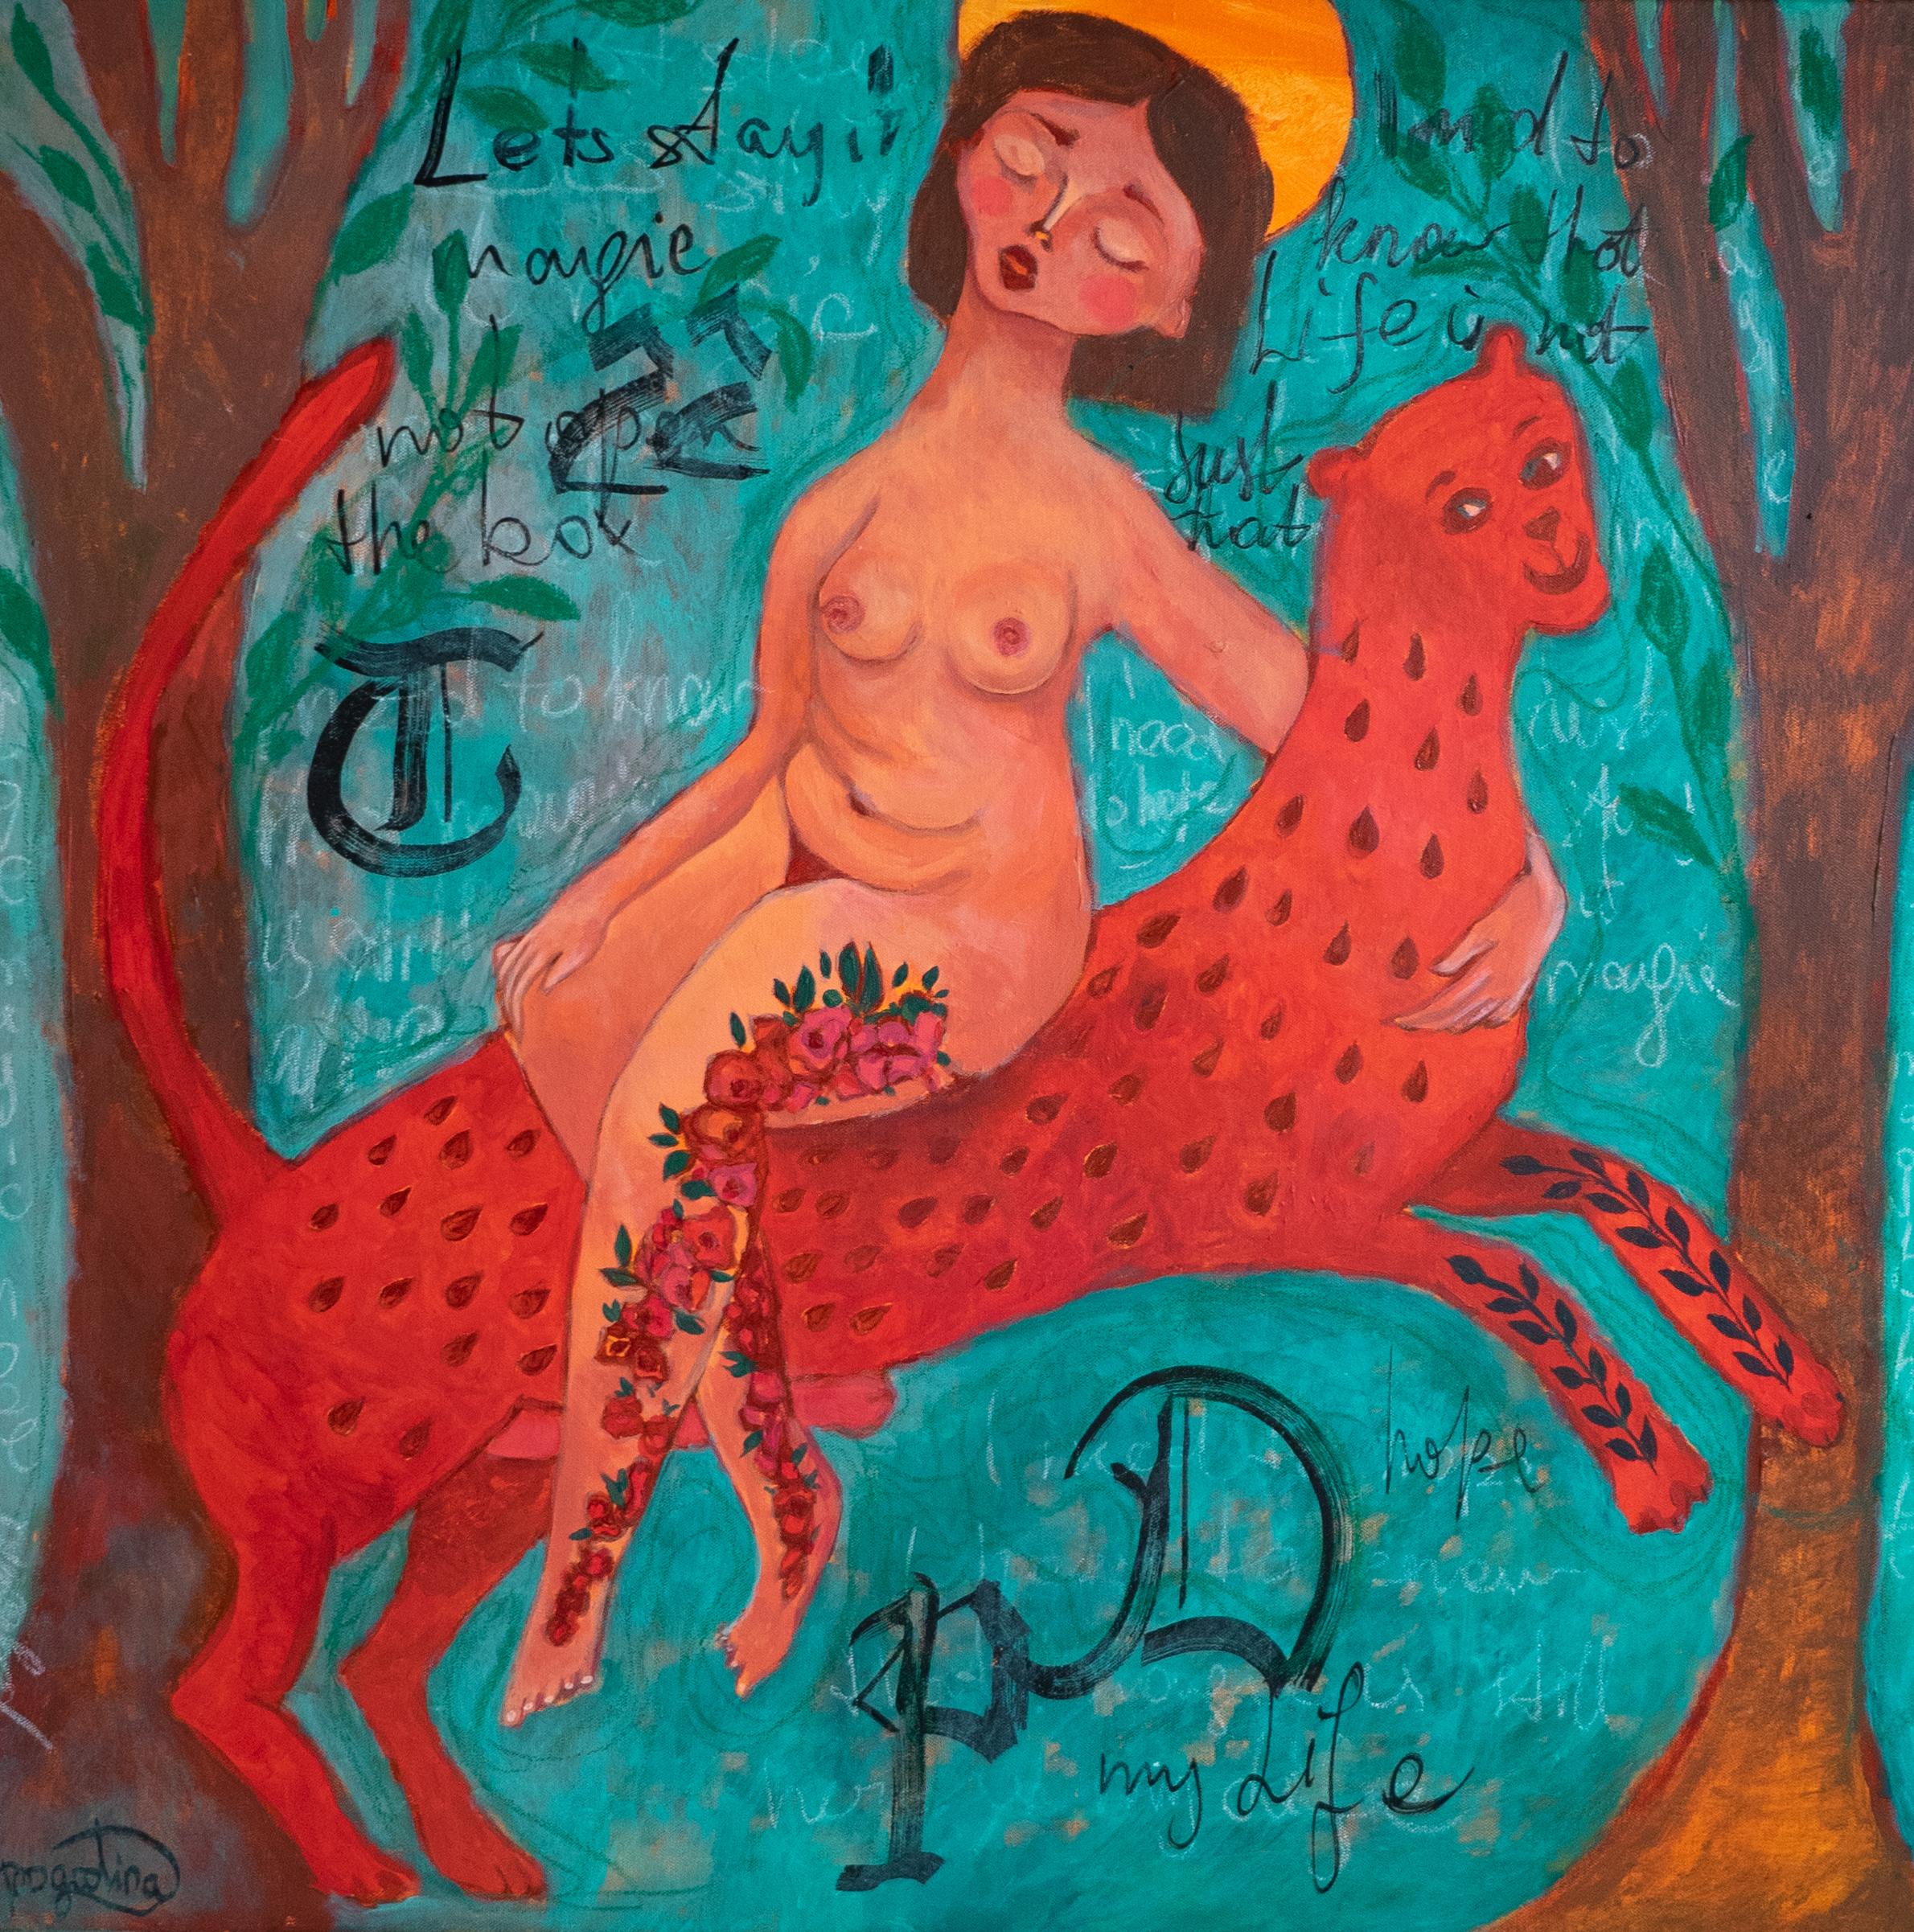 Je n'ai plus peur, peinture colorée d'art naïf et faiministe d'un artiste ukrainien